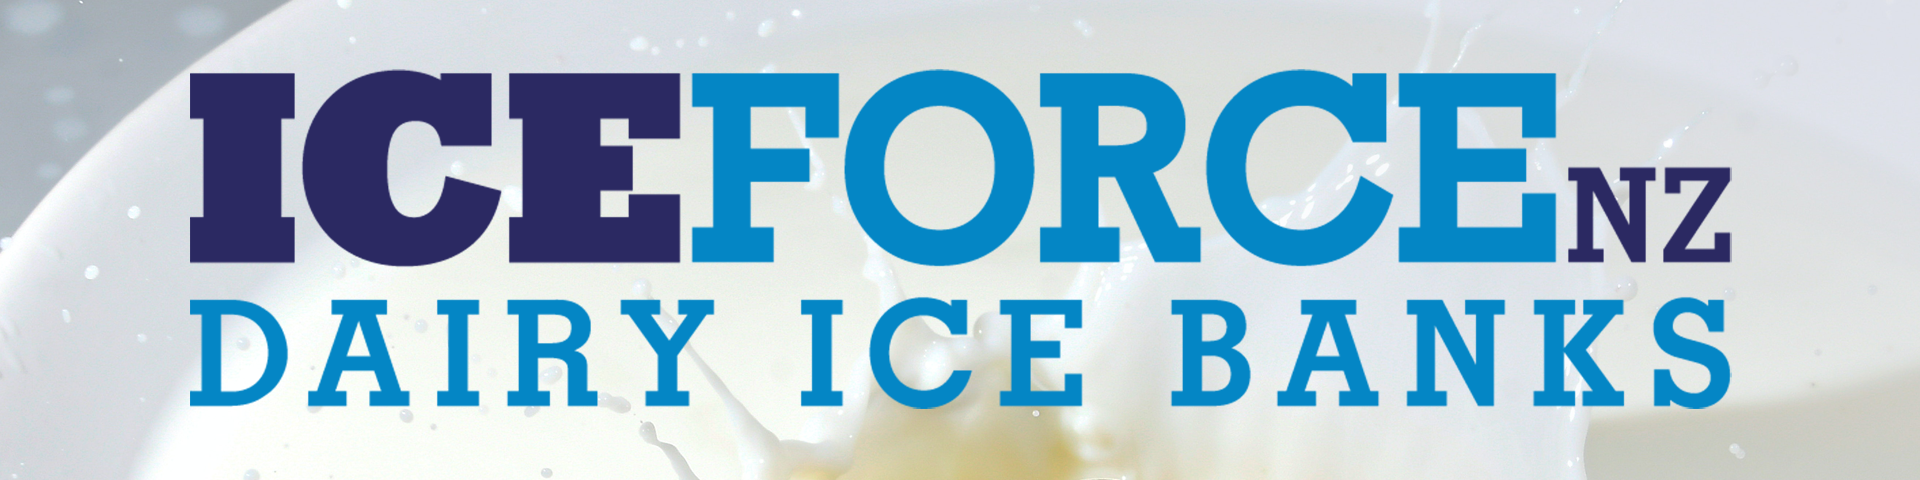 Iceforce Logo Rgb 72dpi W Milk